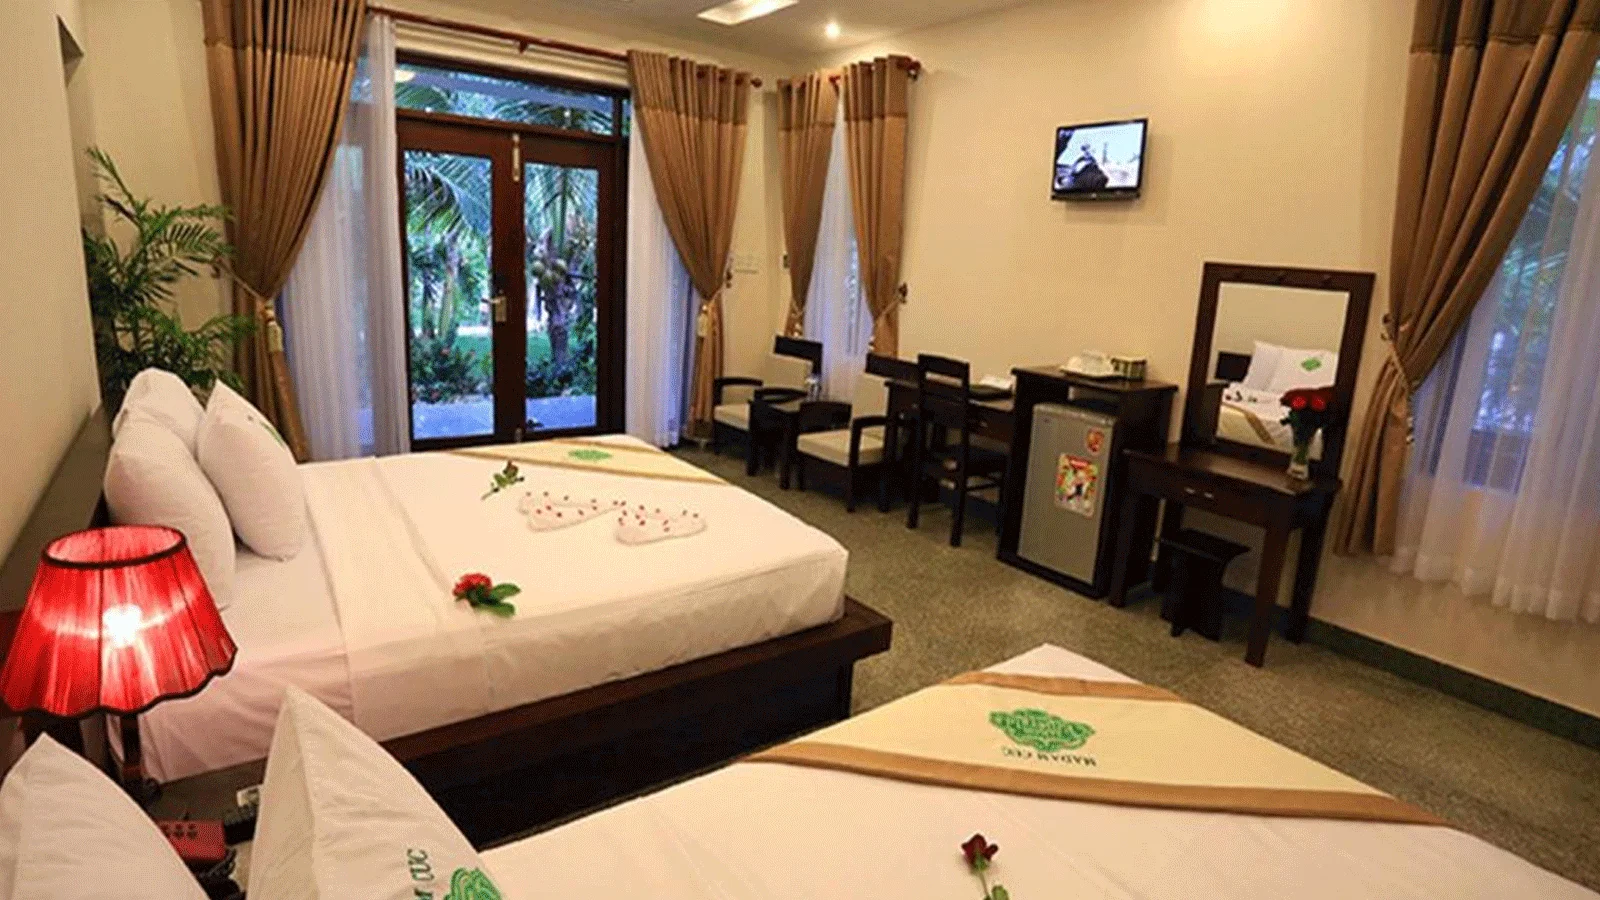 Resort Sài Gòn Emerald Mũi Né Phan Thiết - Mũi Né